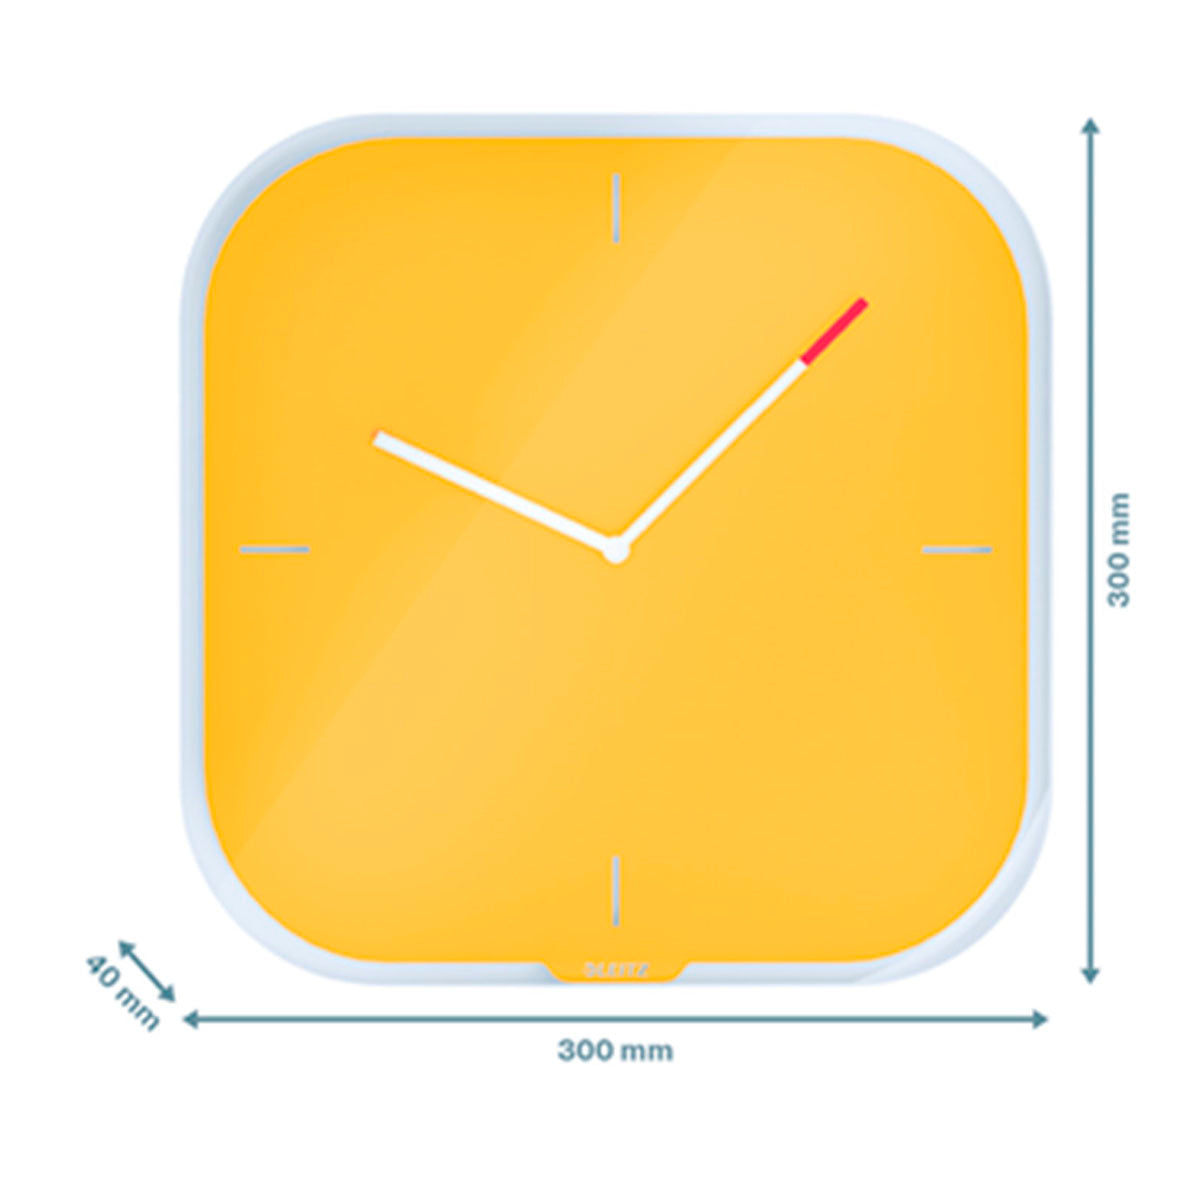 LEITZ Cosy - Reloj de Pared Analógico y Silencioso, Incluye Rotulador. Amarillo